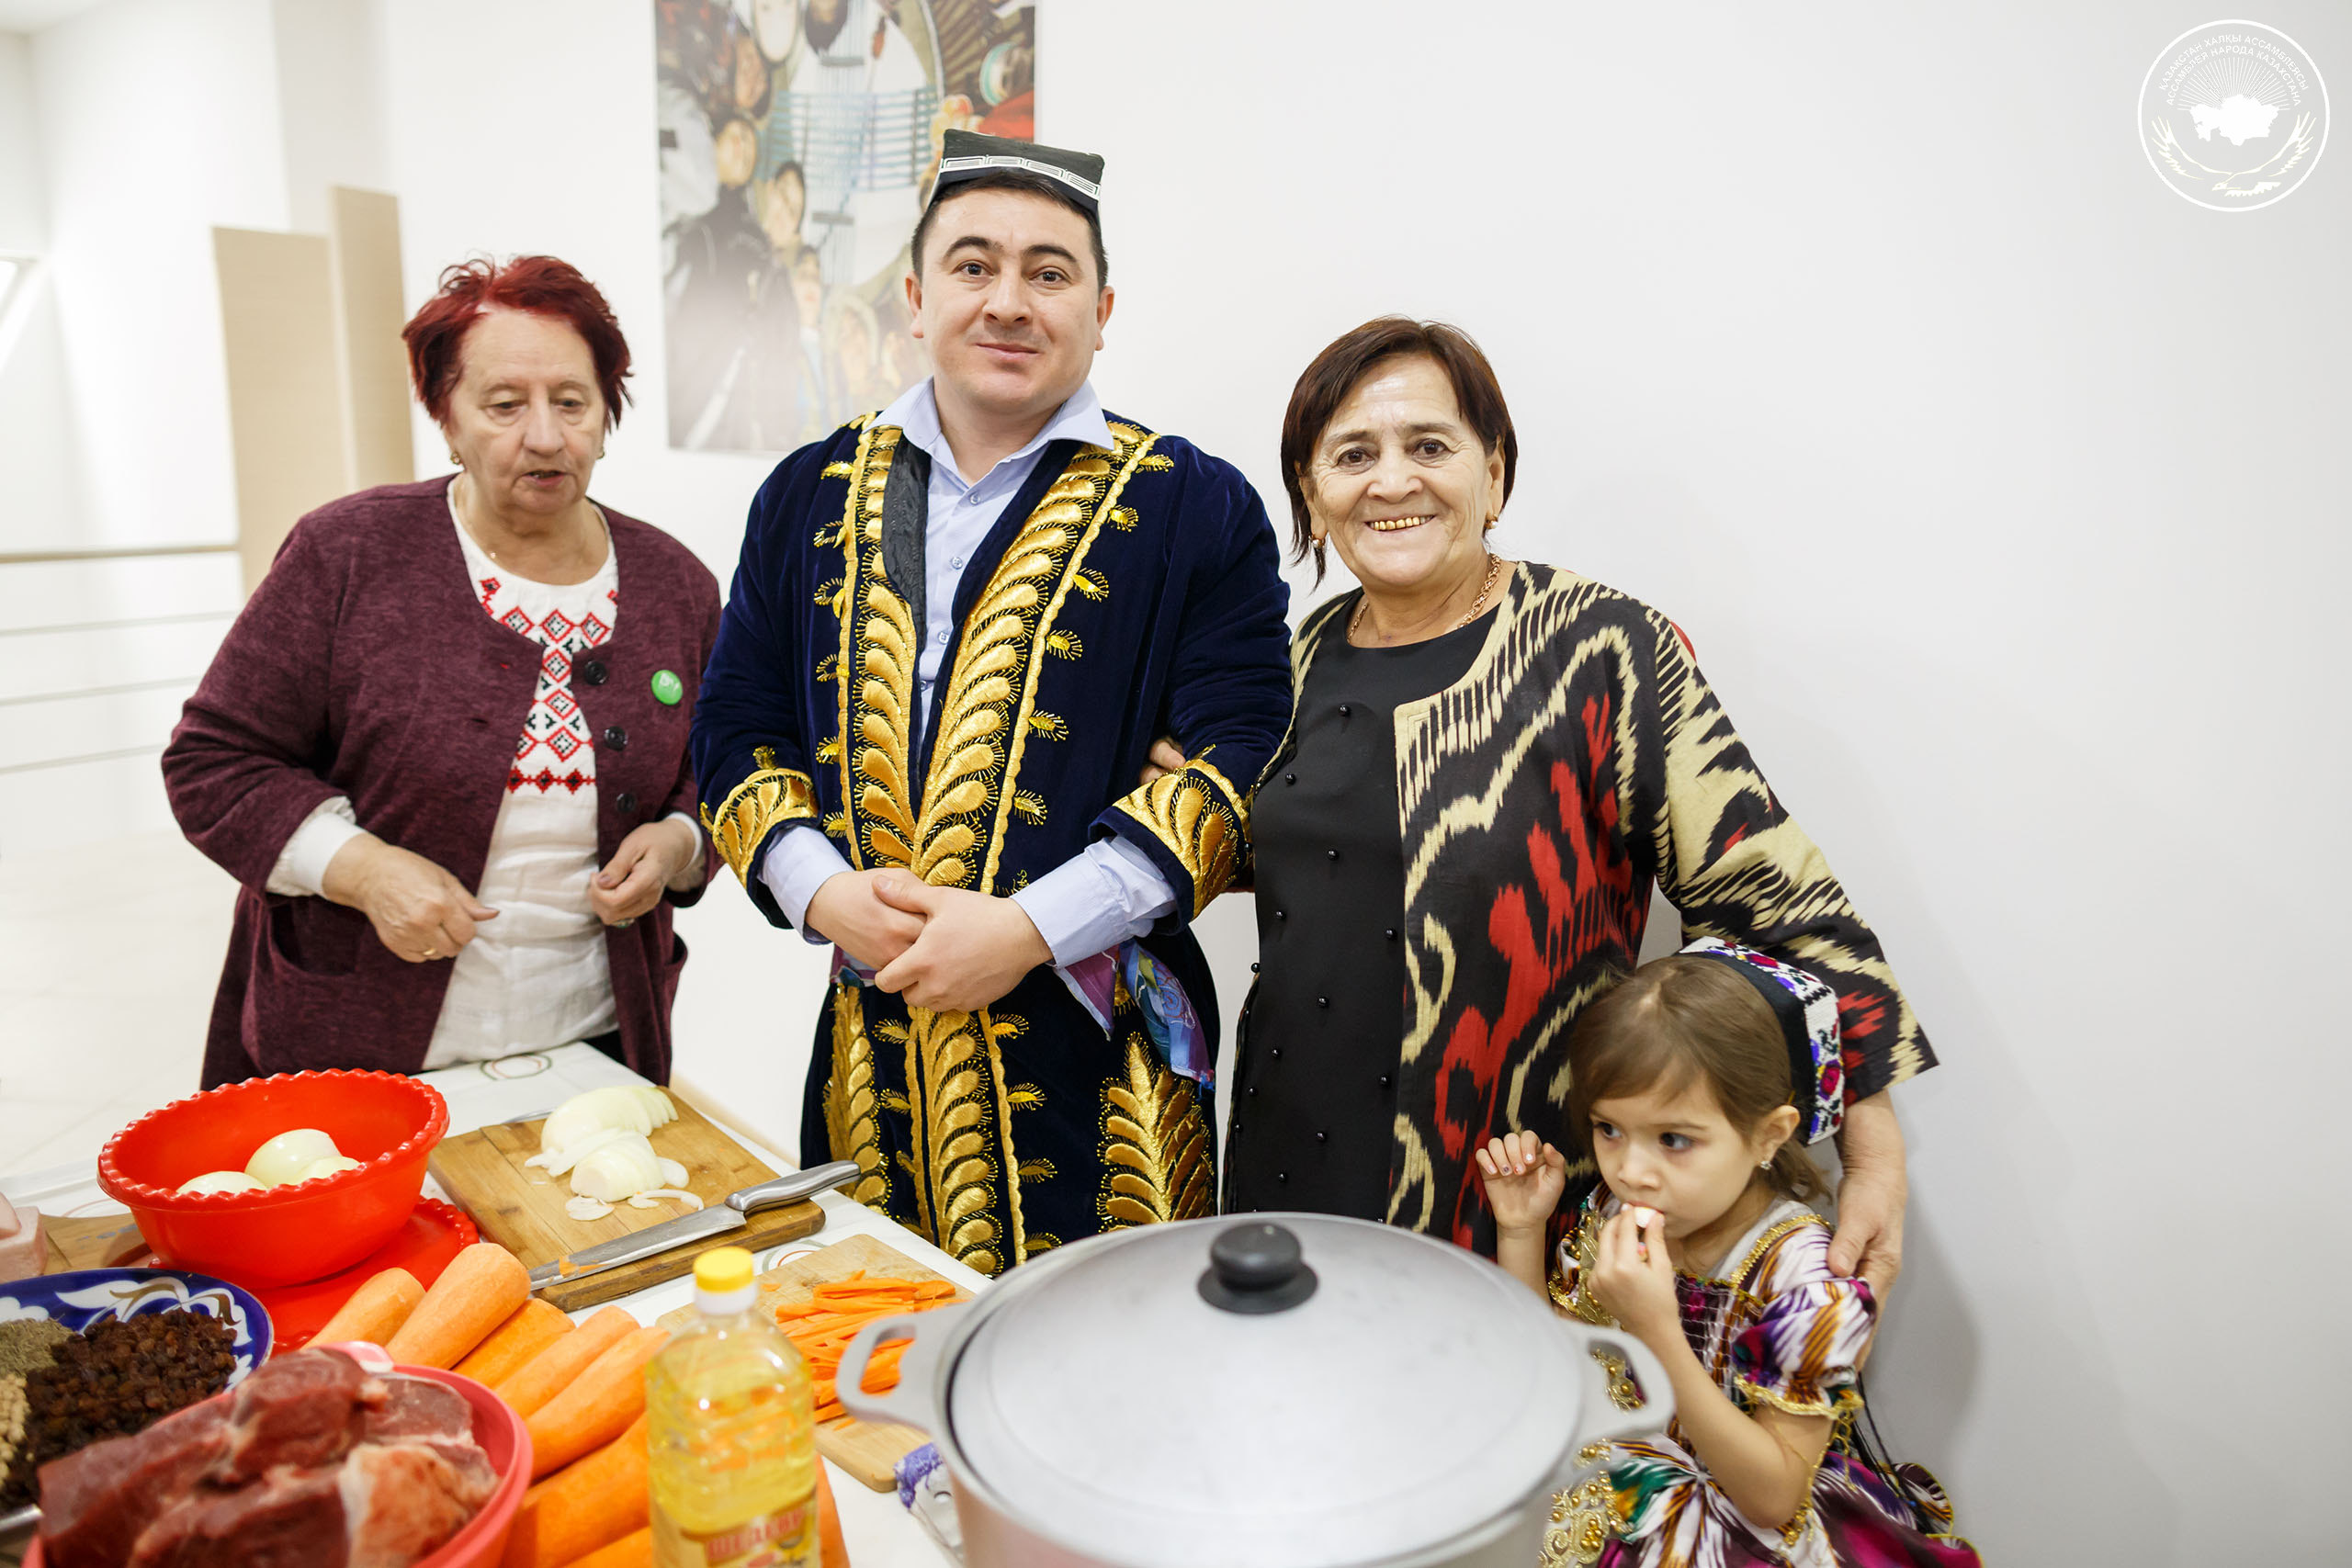 Узбекская культура